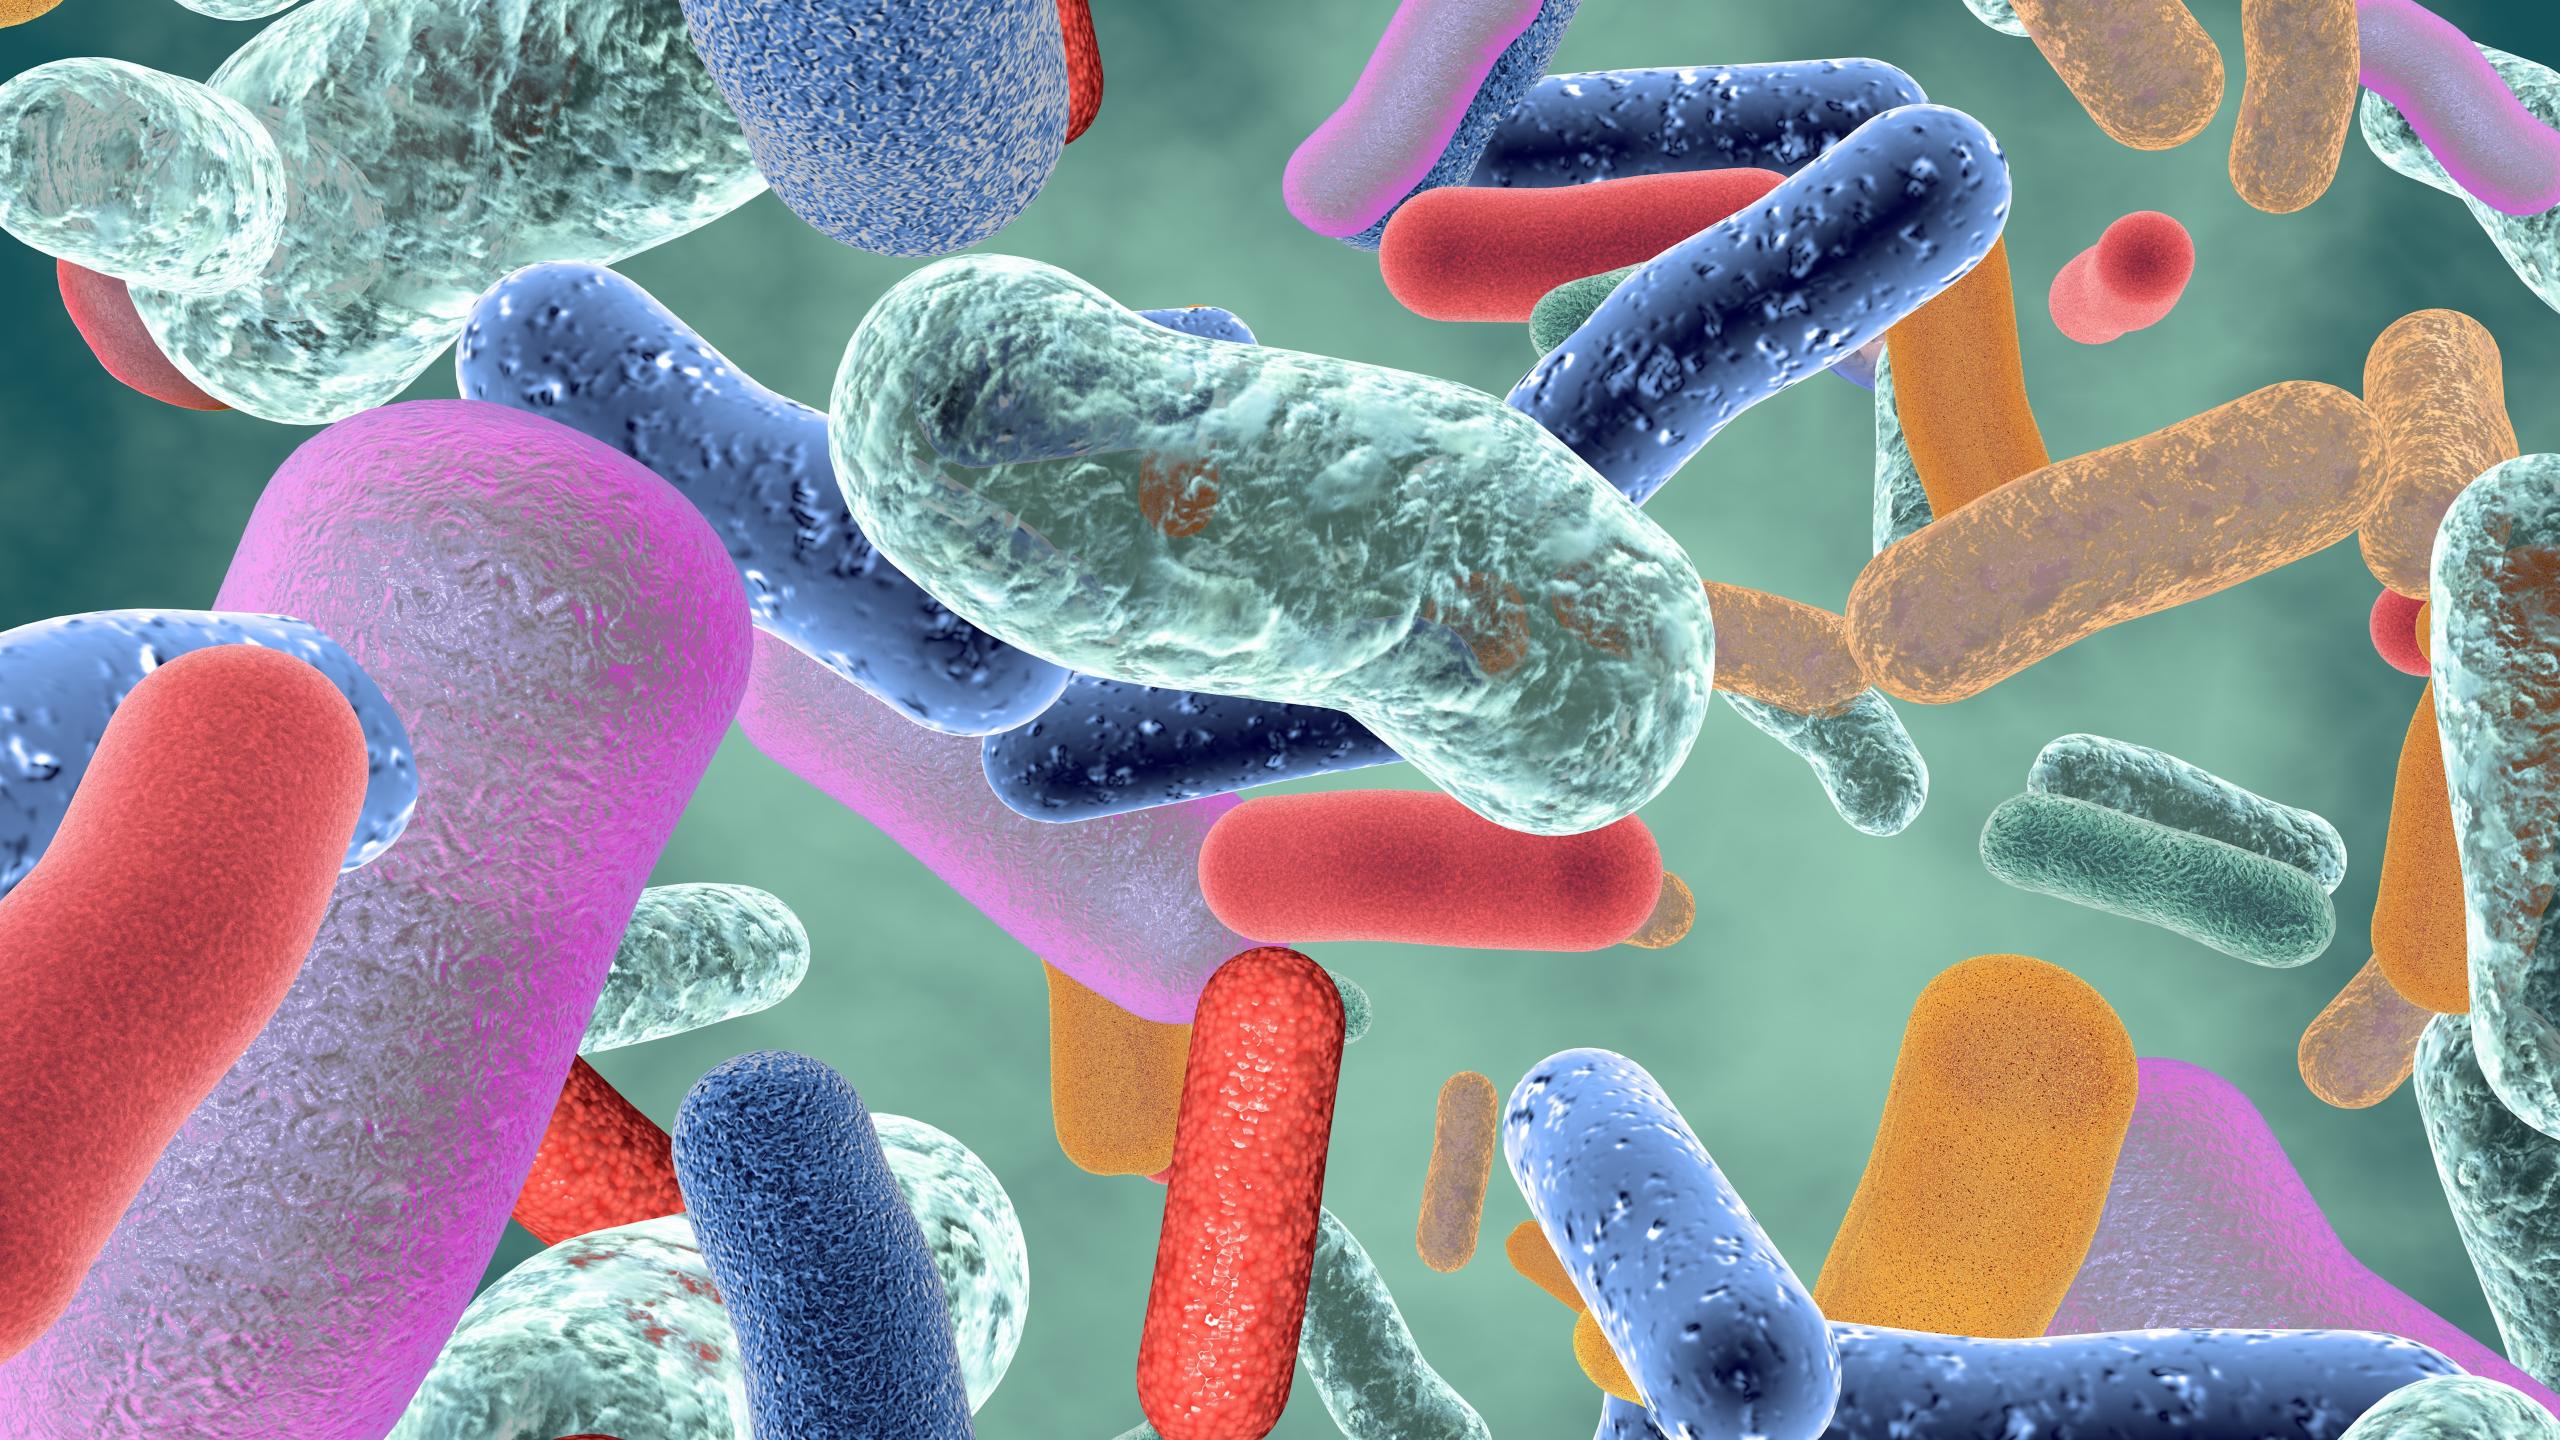 Микроорганизмы способные вызывать заболевания. Бактерии микробиота кишечника. Микробиота кишечника микробиология. Патоген бактерия. Патогенные микробы микробиология.